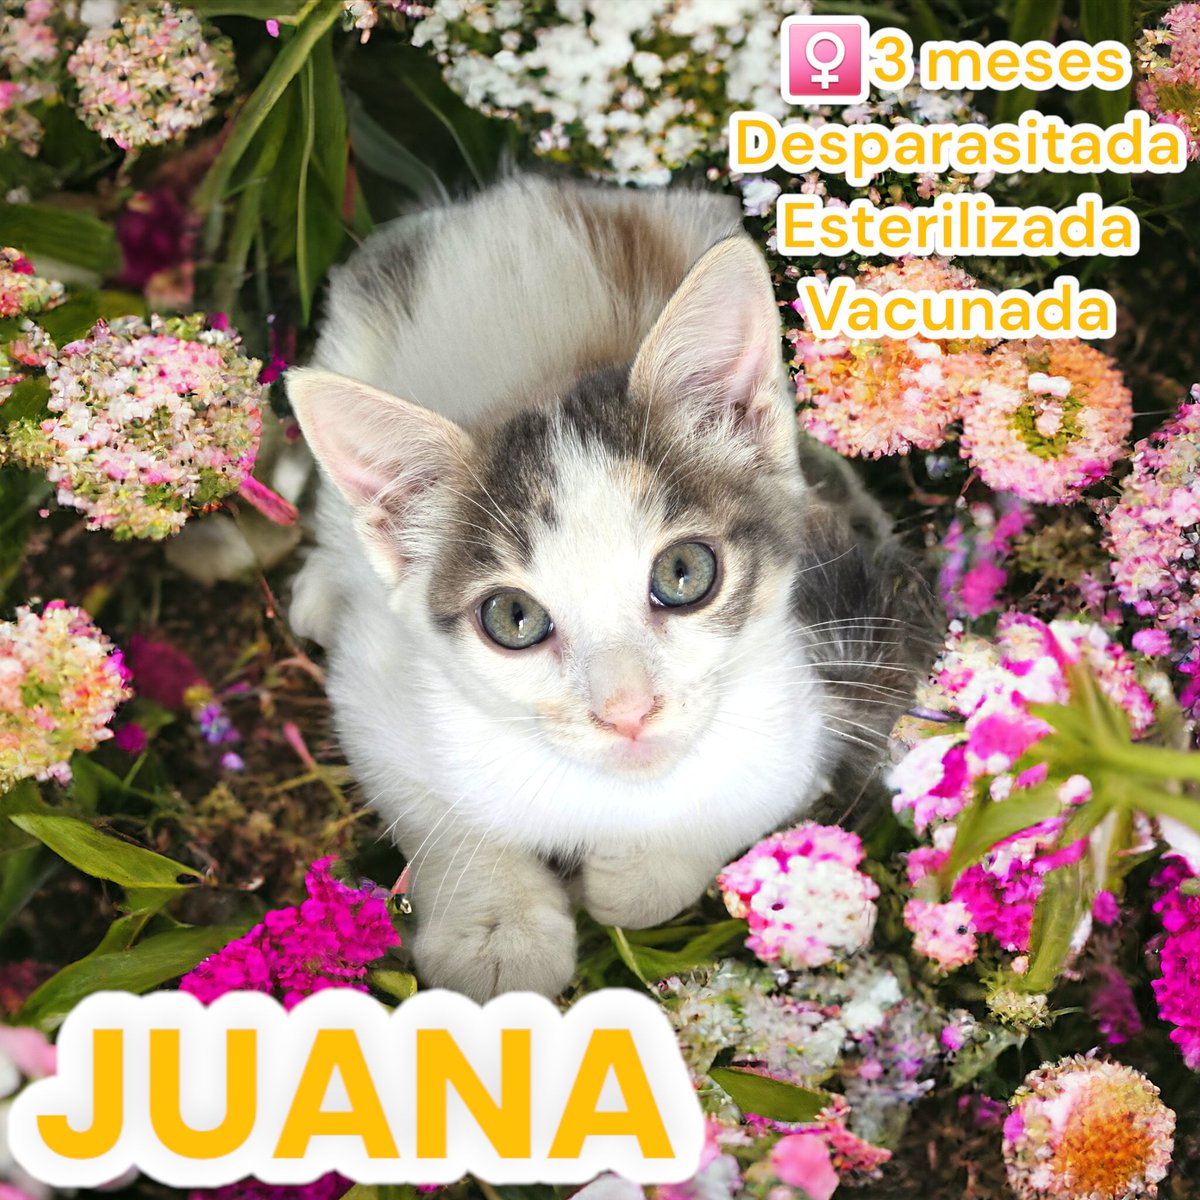 En nuestro aaaaamplio repertorio de gatitos, tenemos a #Chana y #Juana. Peques que también están en espera de #AdopciónResponsable en #CDMX. Estas pequeñitas, al igual que los demás, nacieron en la calle. No las dejemos solas, démosles una segunda oportunidad. Salvemos nuestra